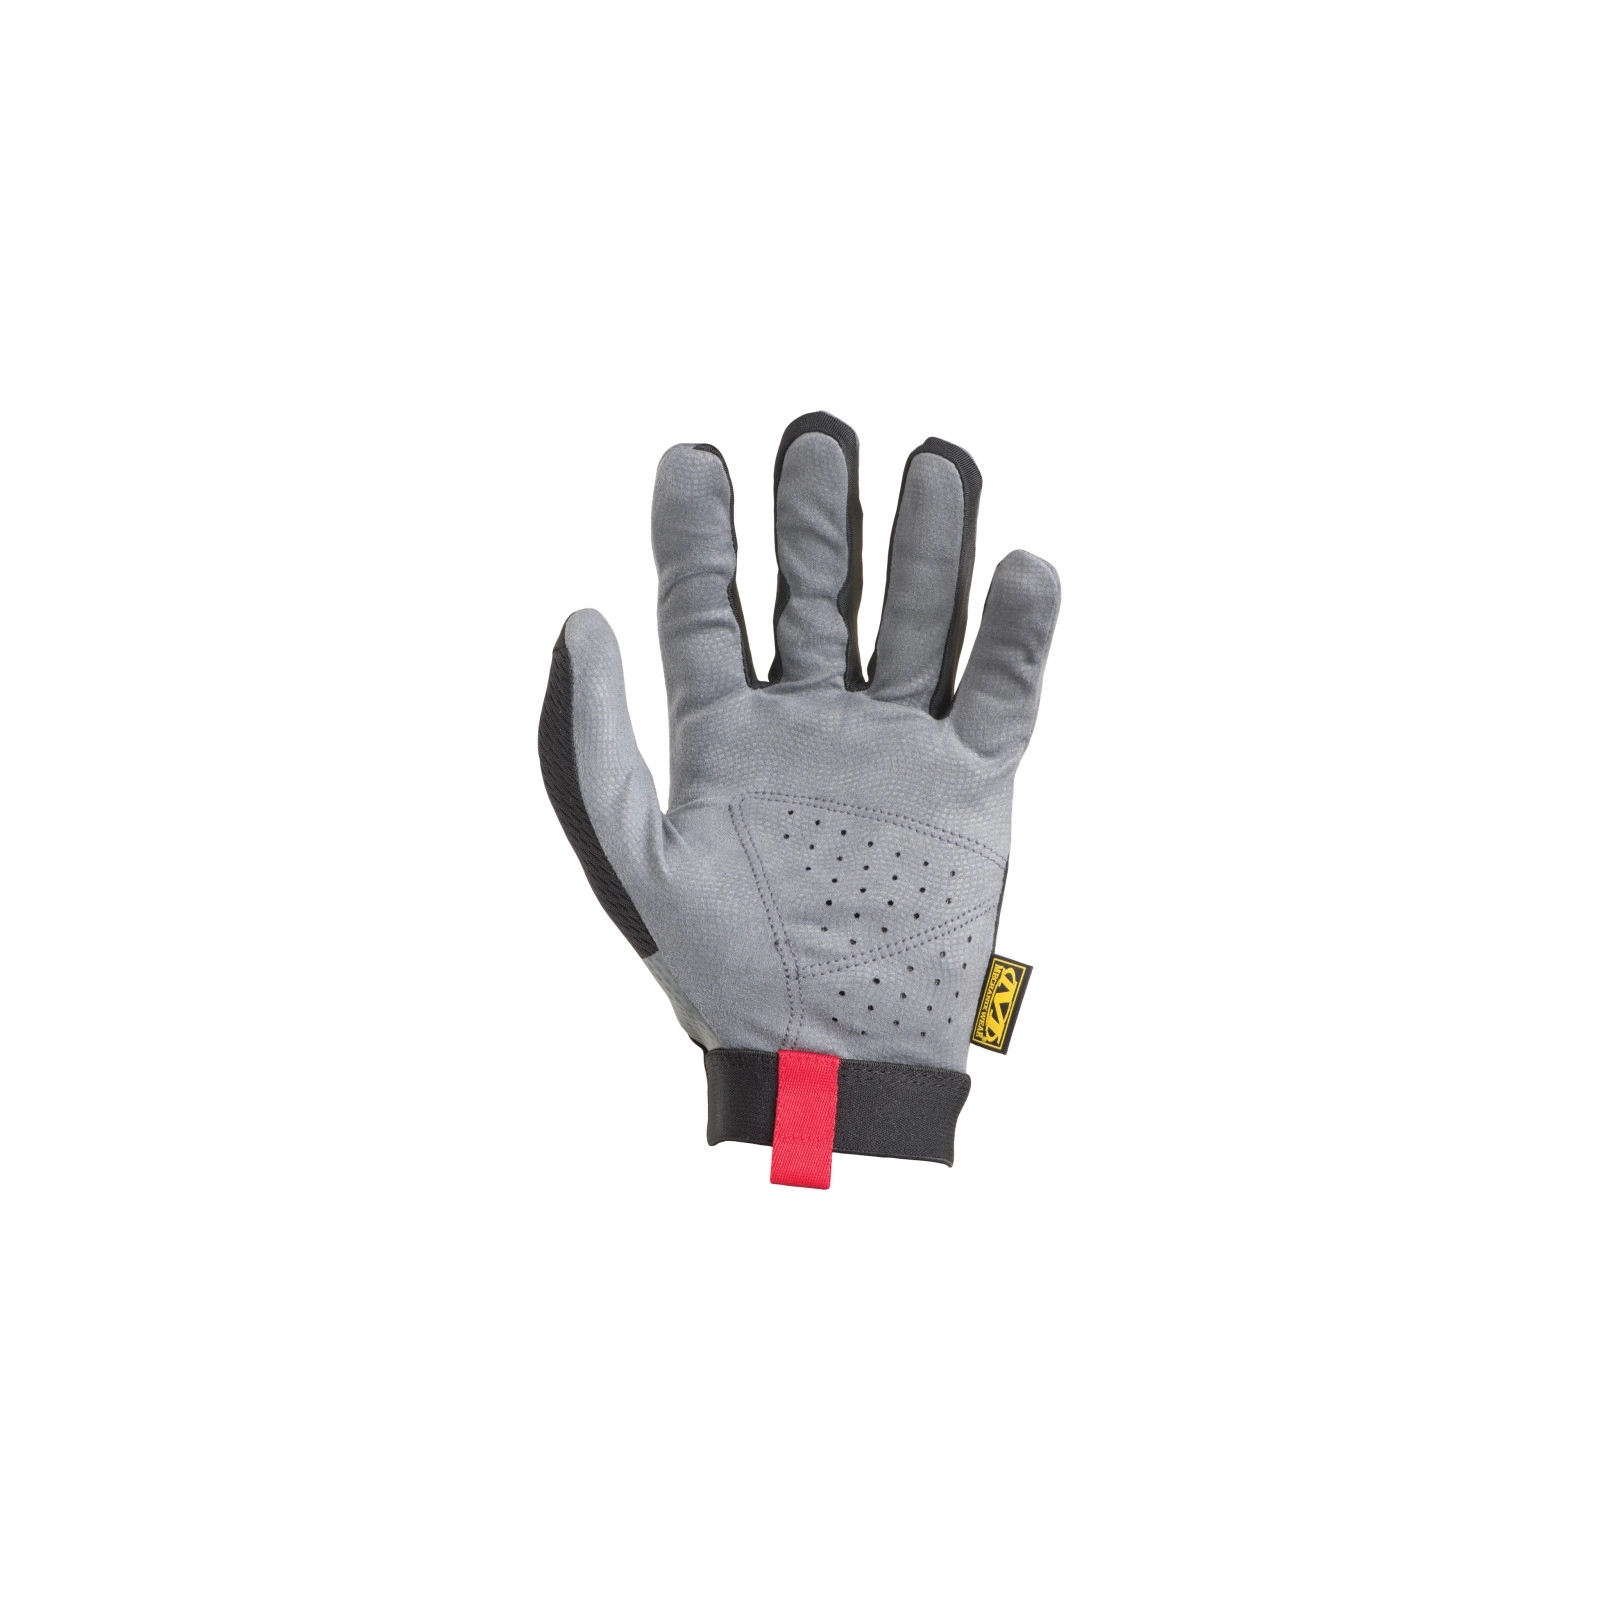 Захисні рукавиці Mechanix Specialty Hi-Dexterity 0.5 (LG) (MSD-05-010) зображення 2